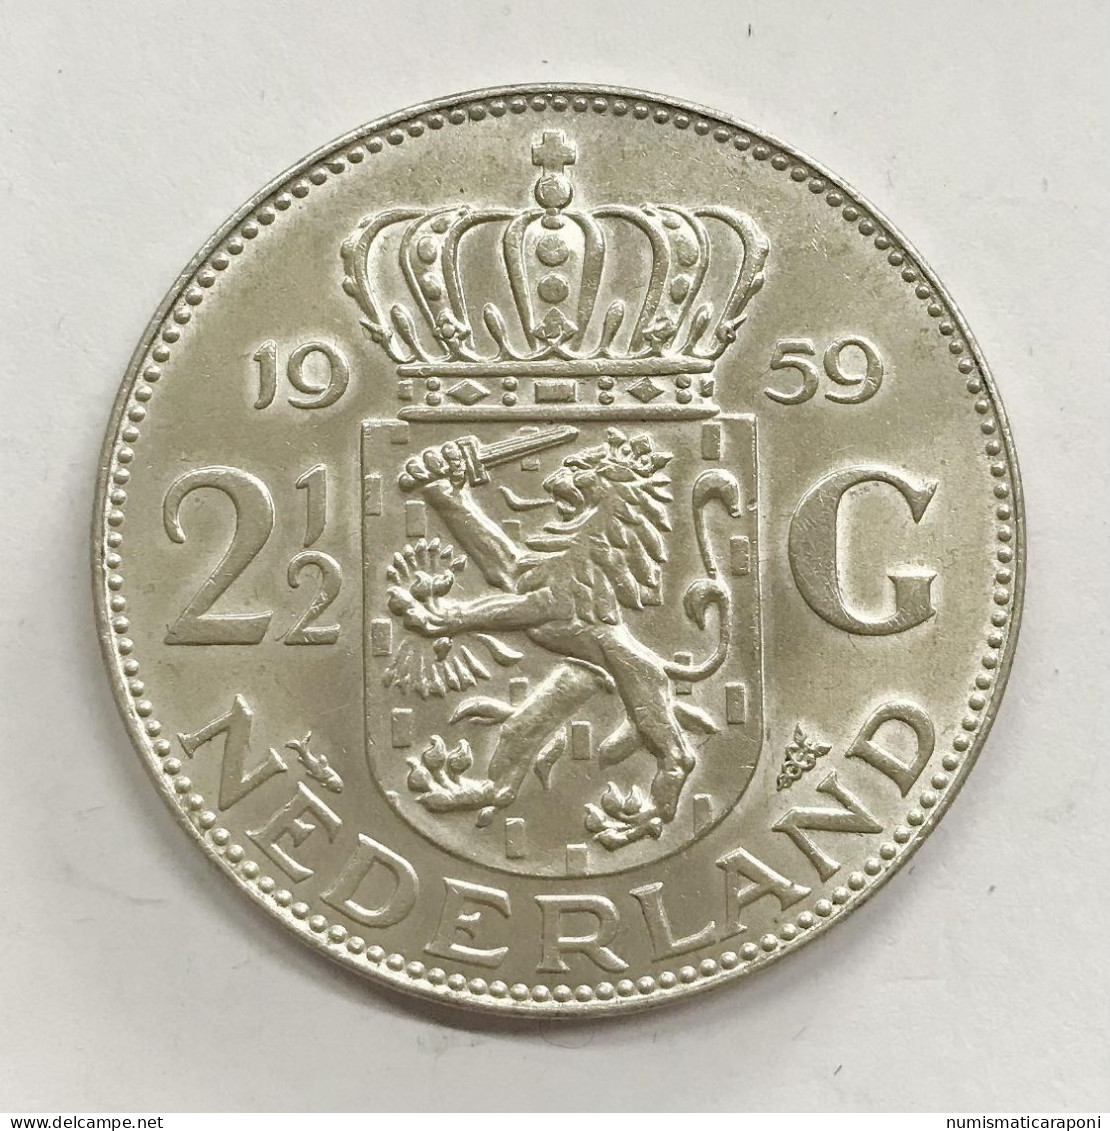 NETHERLAND OLANDA WILHELMINA IIà 2 E 1/2 GULDEN 1959  E.1154 - 2 1/2 Florín Holandés (Gulden)